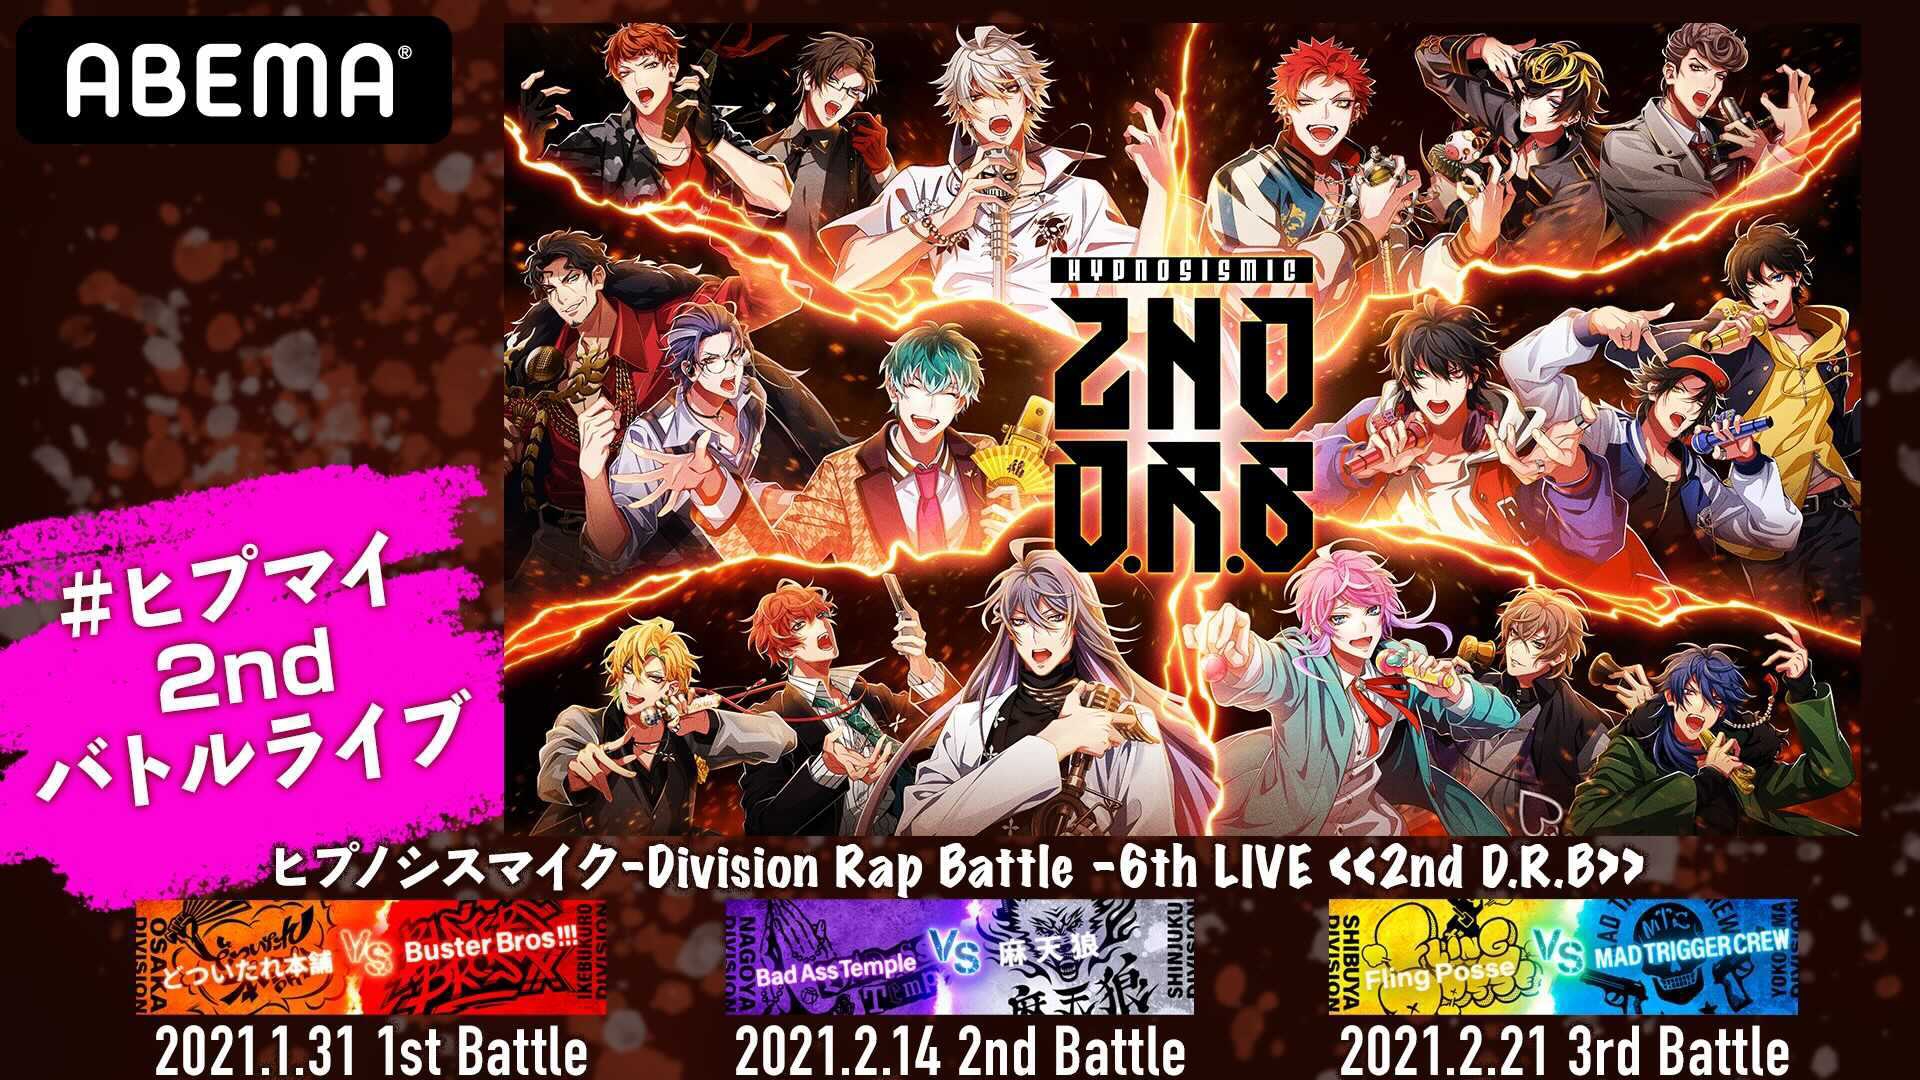 ヒプノシスマイク-Division Rap Battle-6th LIVE 2…MADTRIGGERCREW